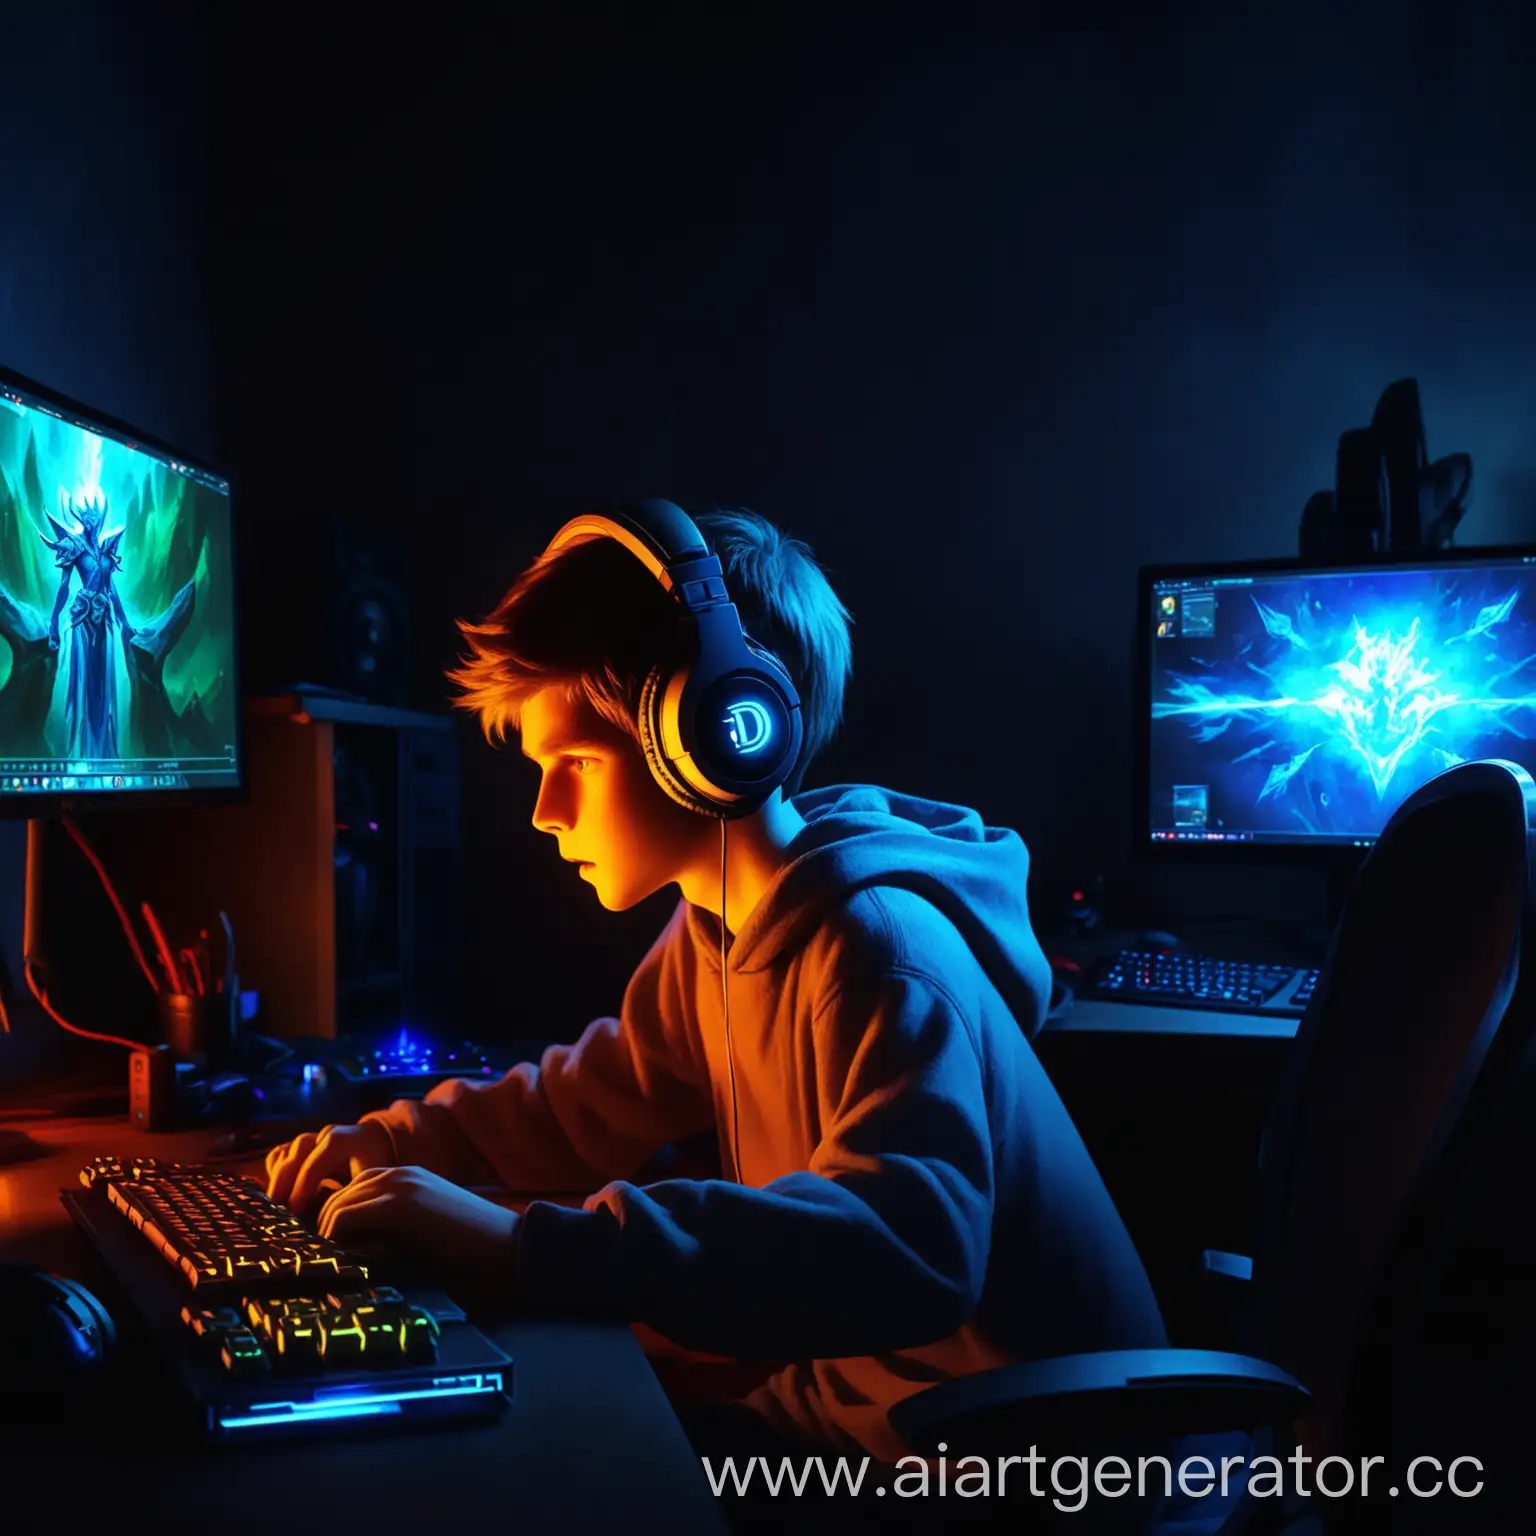 парень играет в доту, на заднем красивом фоне, в темном помещении, со светящимся пк и наушниками
